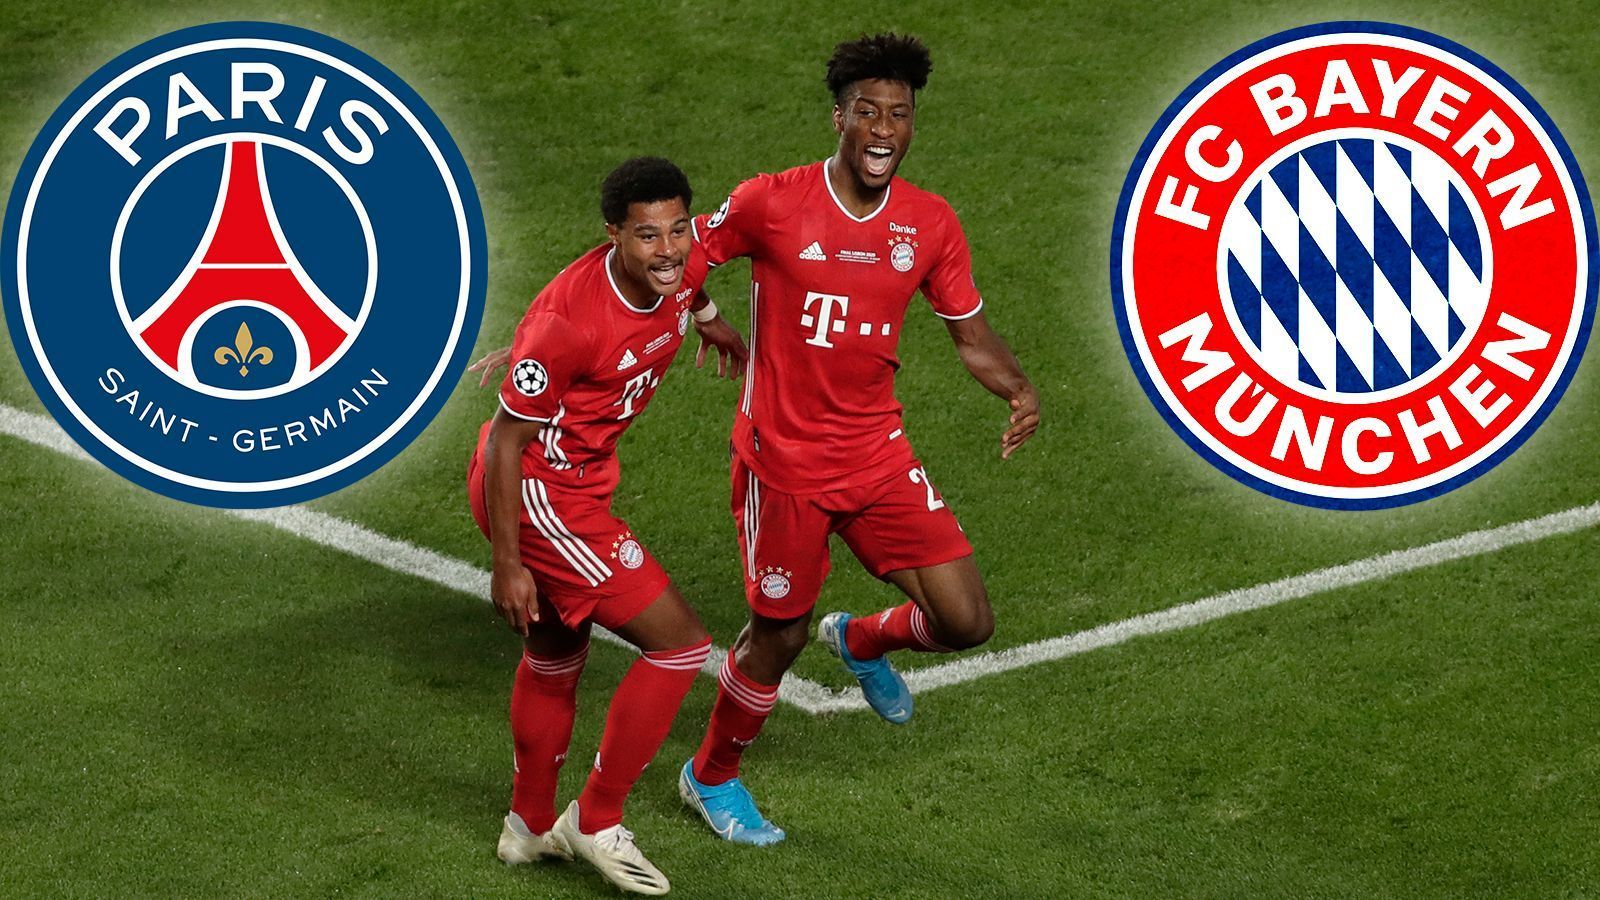 
                <strong>Einzelkritik PSG vs. FC Bayern</strong><br>
                Der FC Bayern hat es geschafft! Durch ein 1:0 gegen Paris St. Germain haben sich die Münchner den dritten Triumph in der Champions League gesichert. Wir haben beide Mannschaften in der Einzelkritik benotet.
              